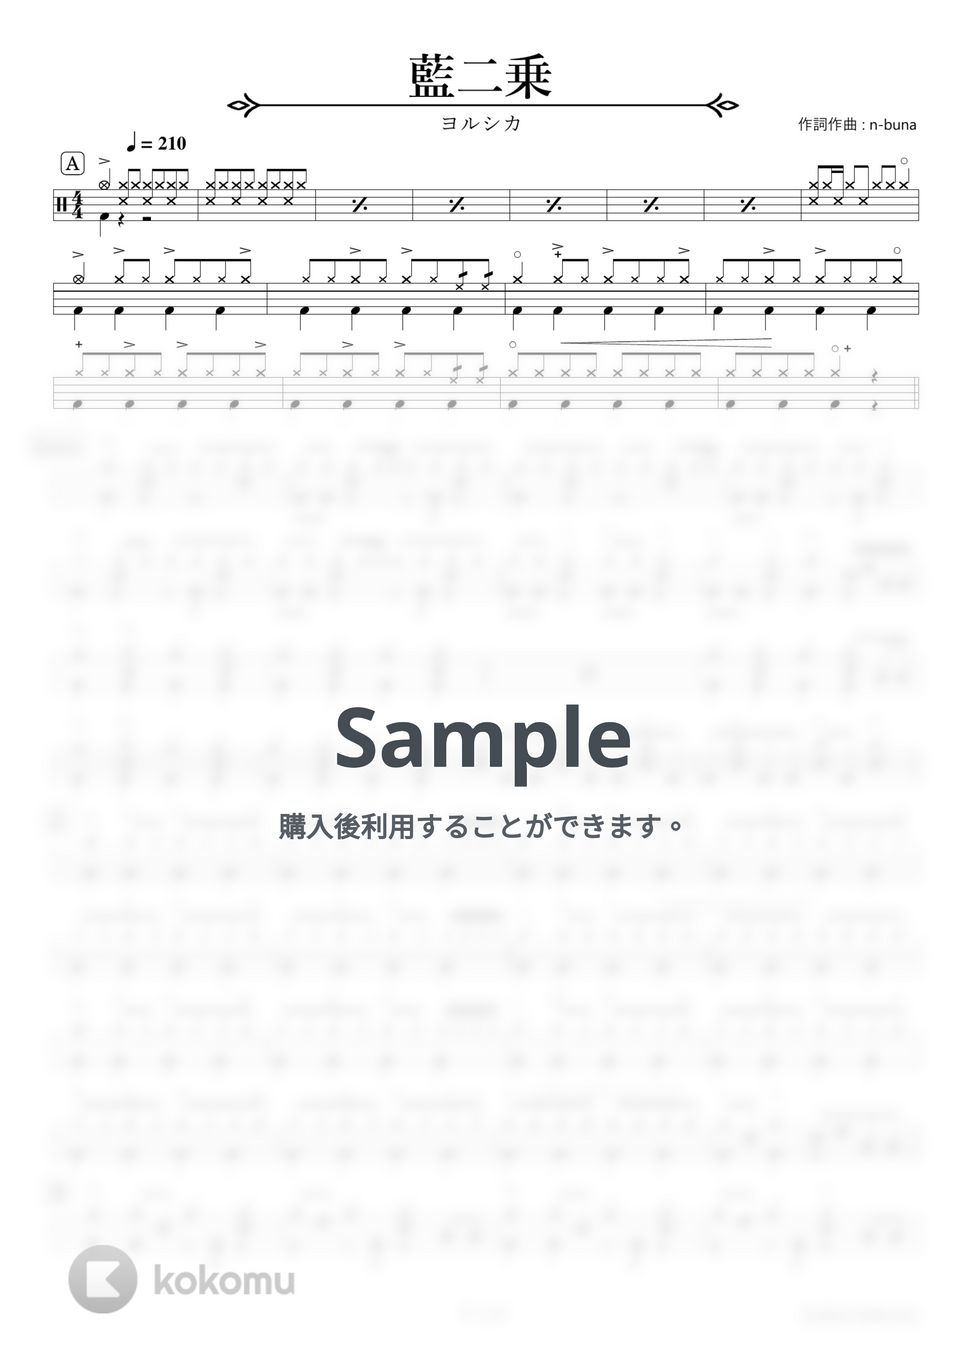 ヨルシカ - 藍二乗【ドラム楽譜】 by HYdrums